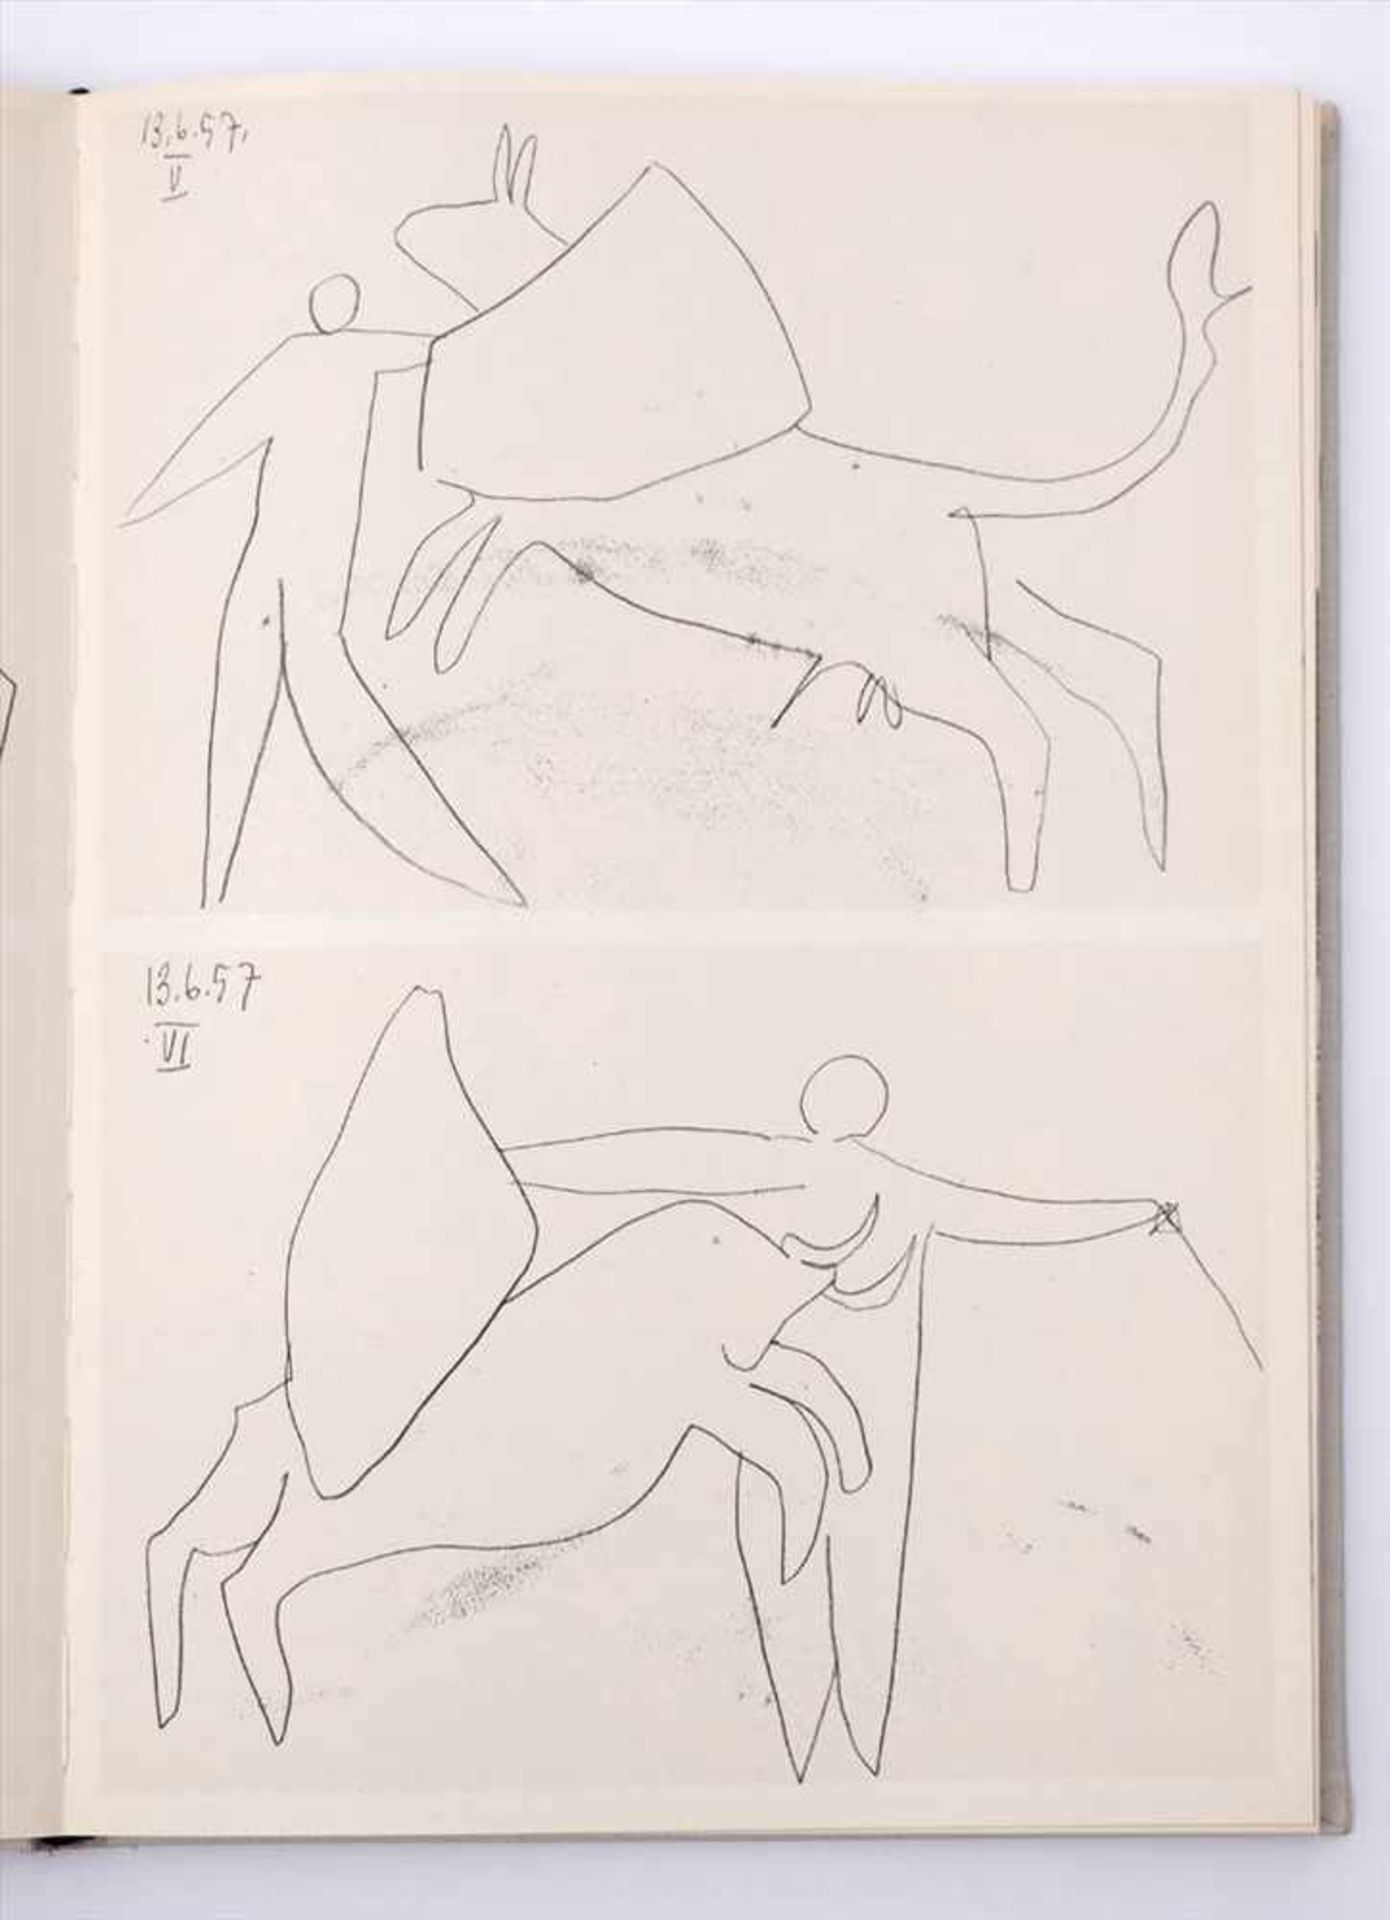 Picasso, Pablo, 1881 - 1973"Toros y toreros", Verlag Editions cercle d'art, Paris 1961. Im - Image 6 of 8